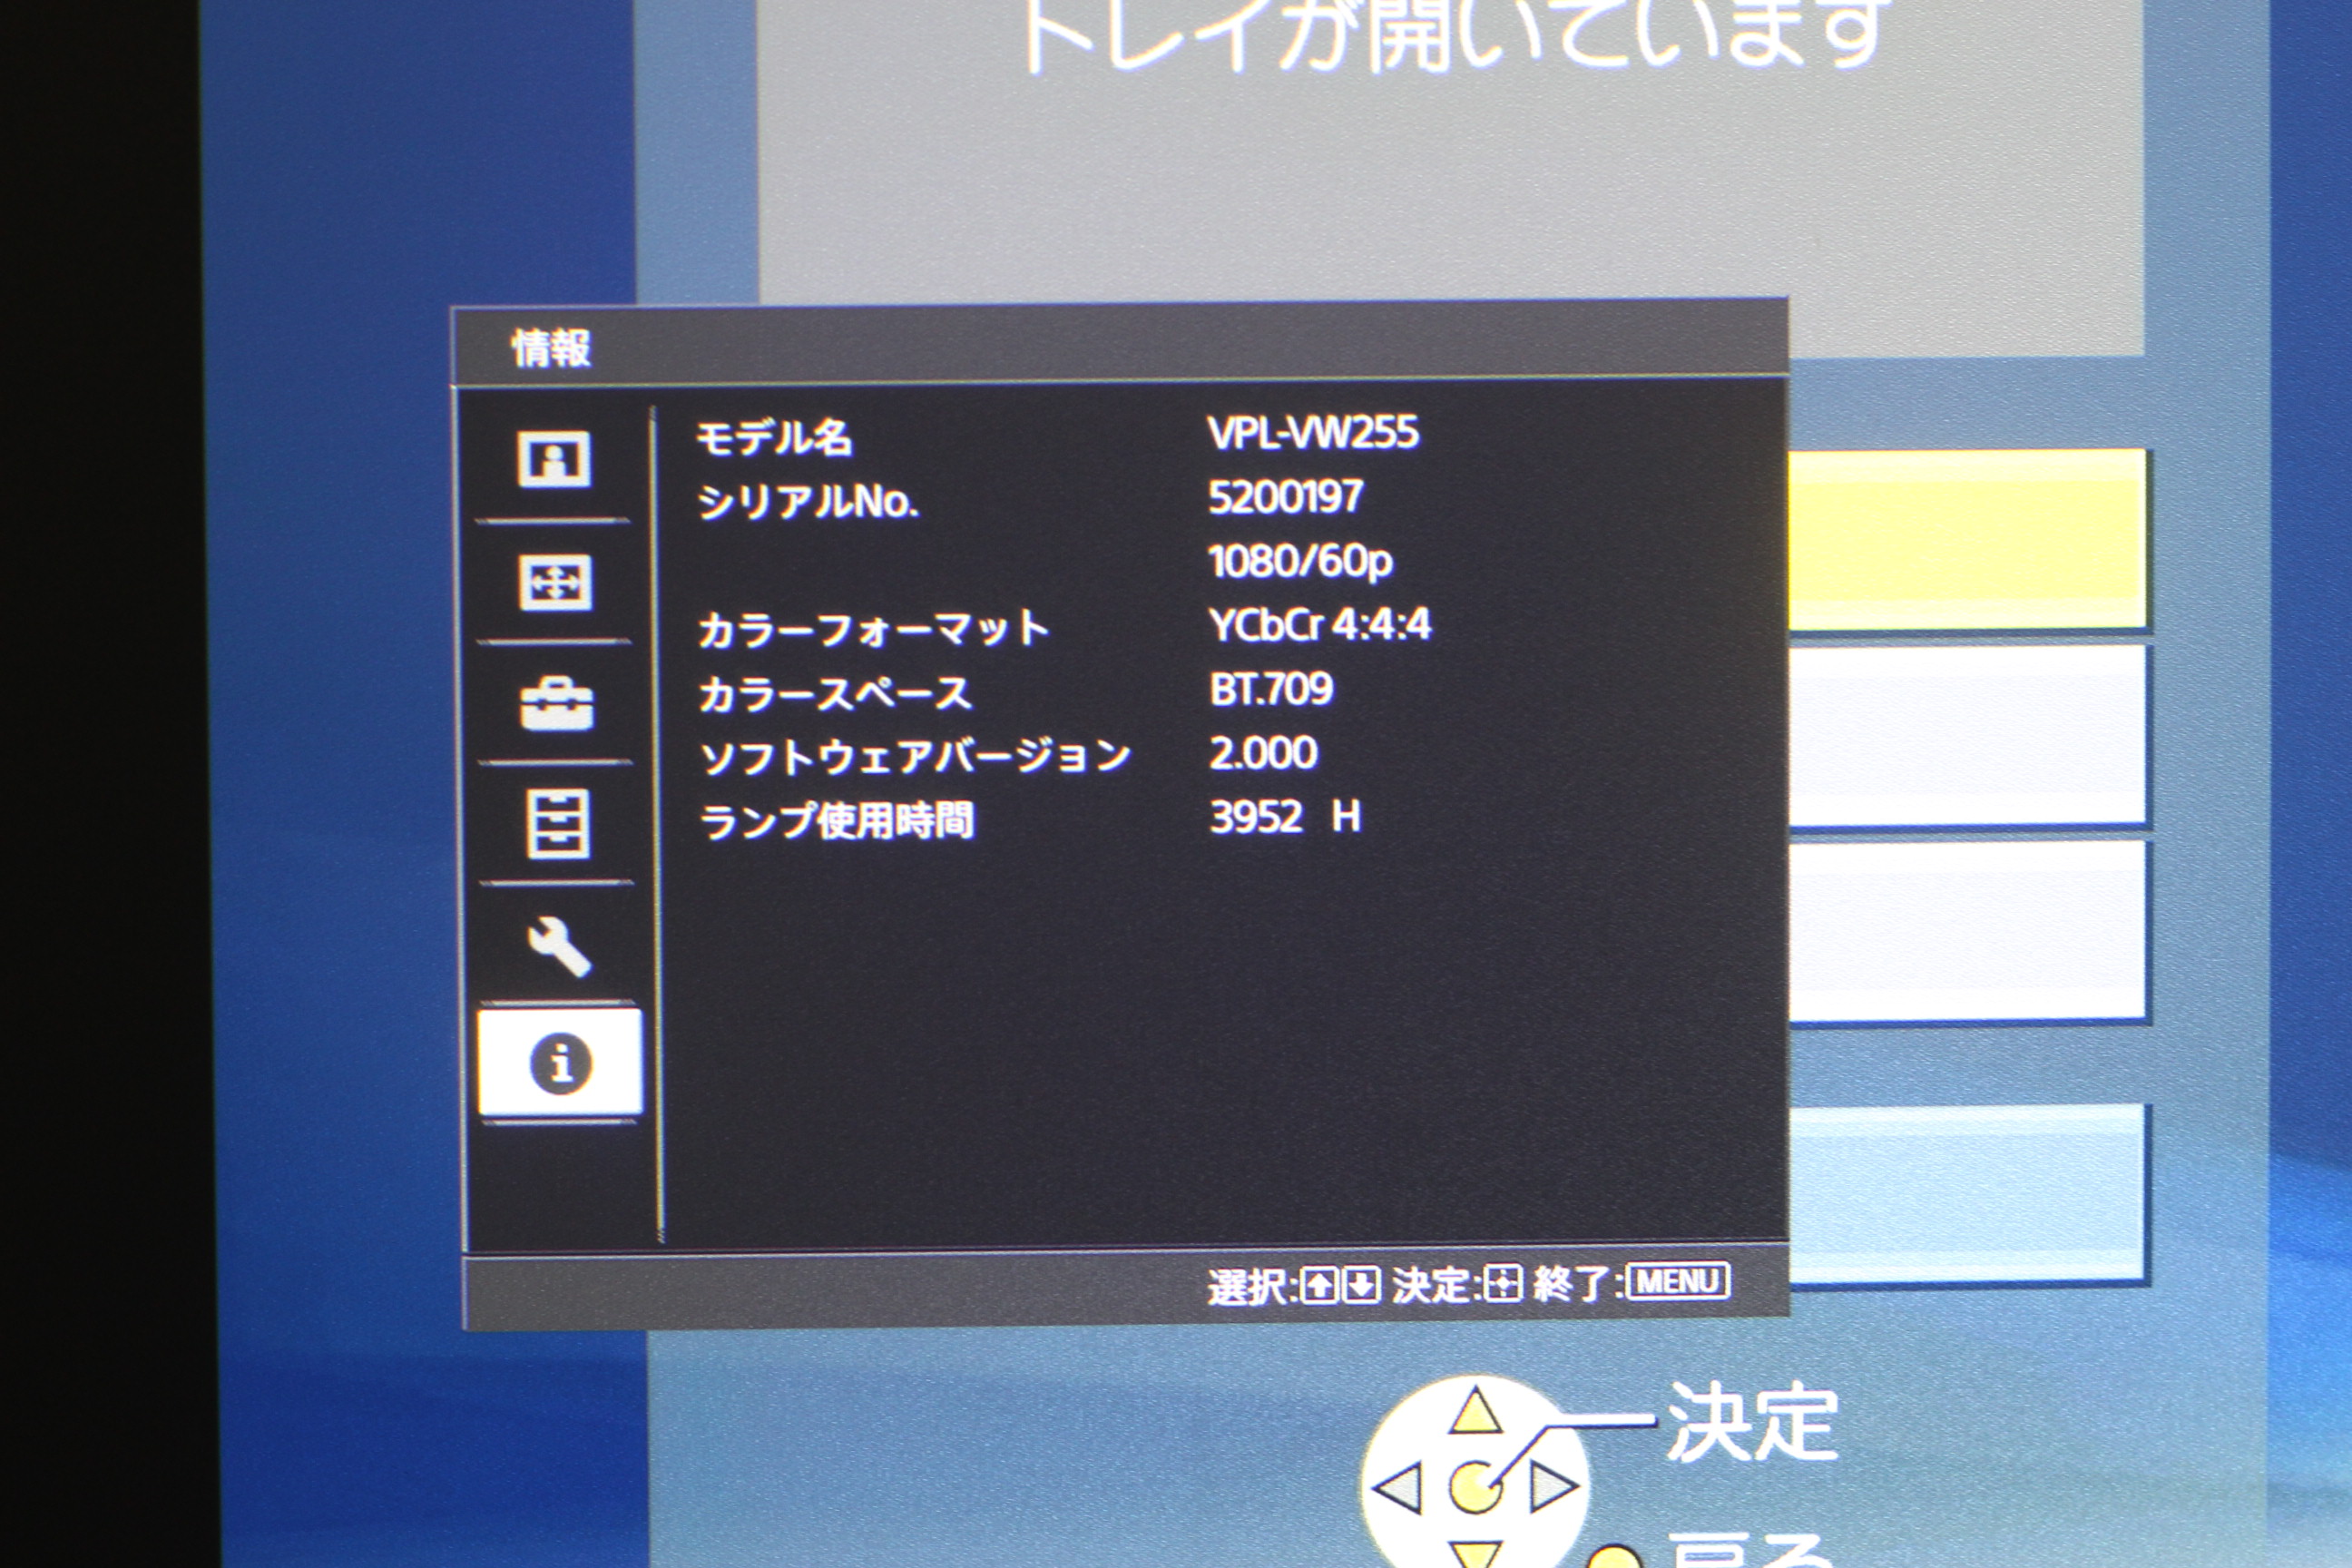 アバックWEB-SHOP / 【中古】SONY VPL-VW255(B) 特価【コード21-05096 ...